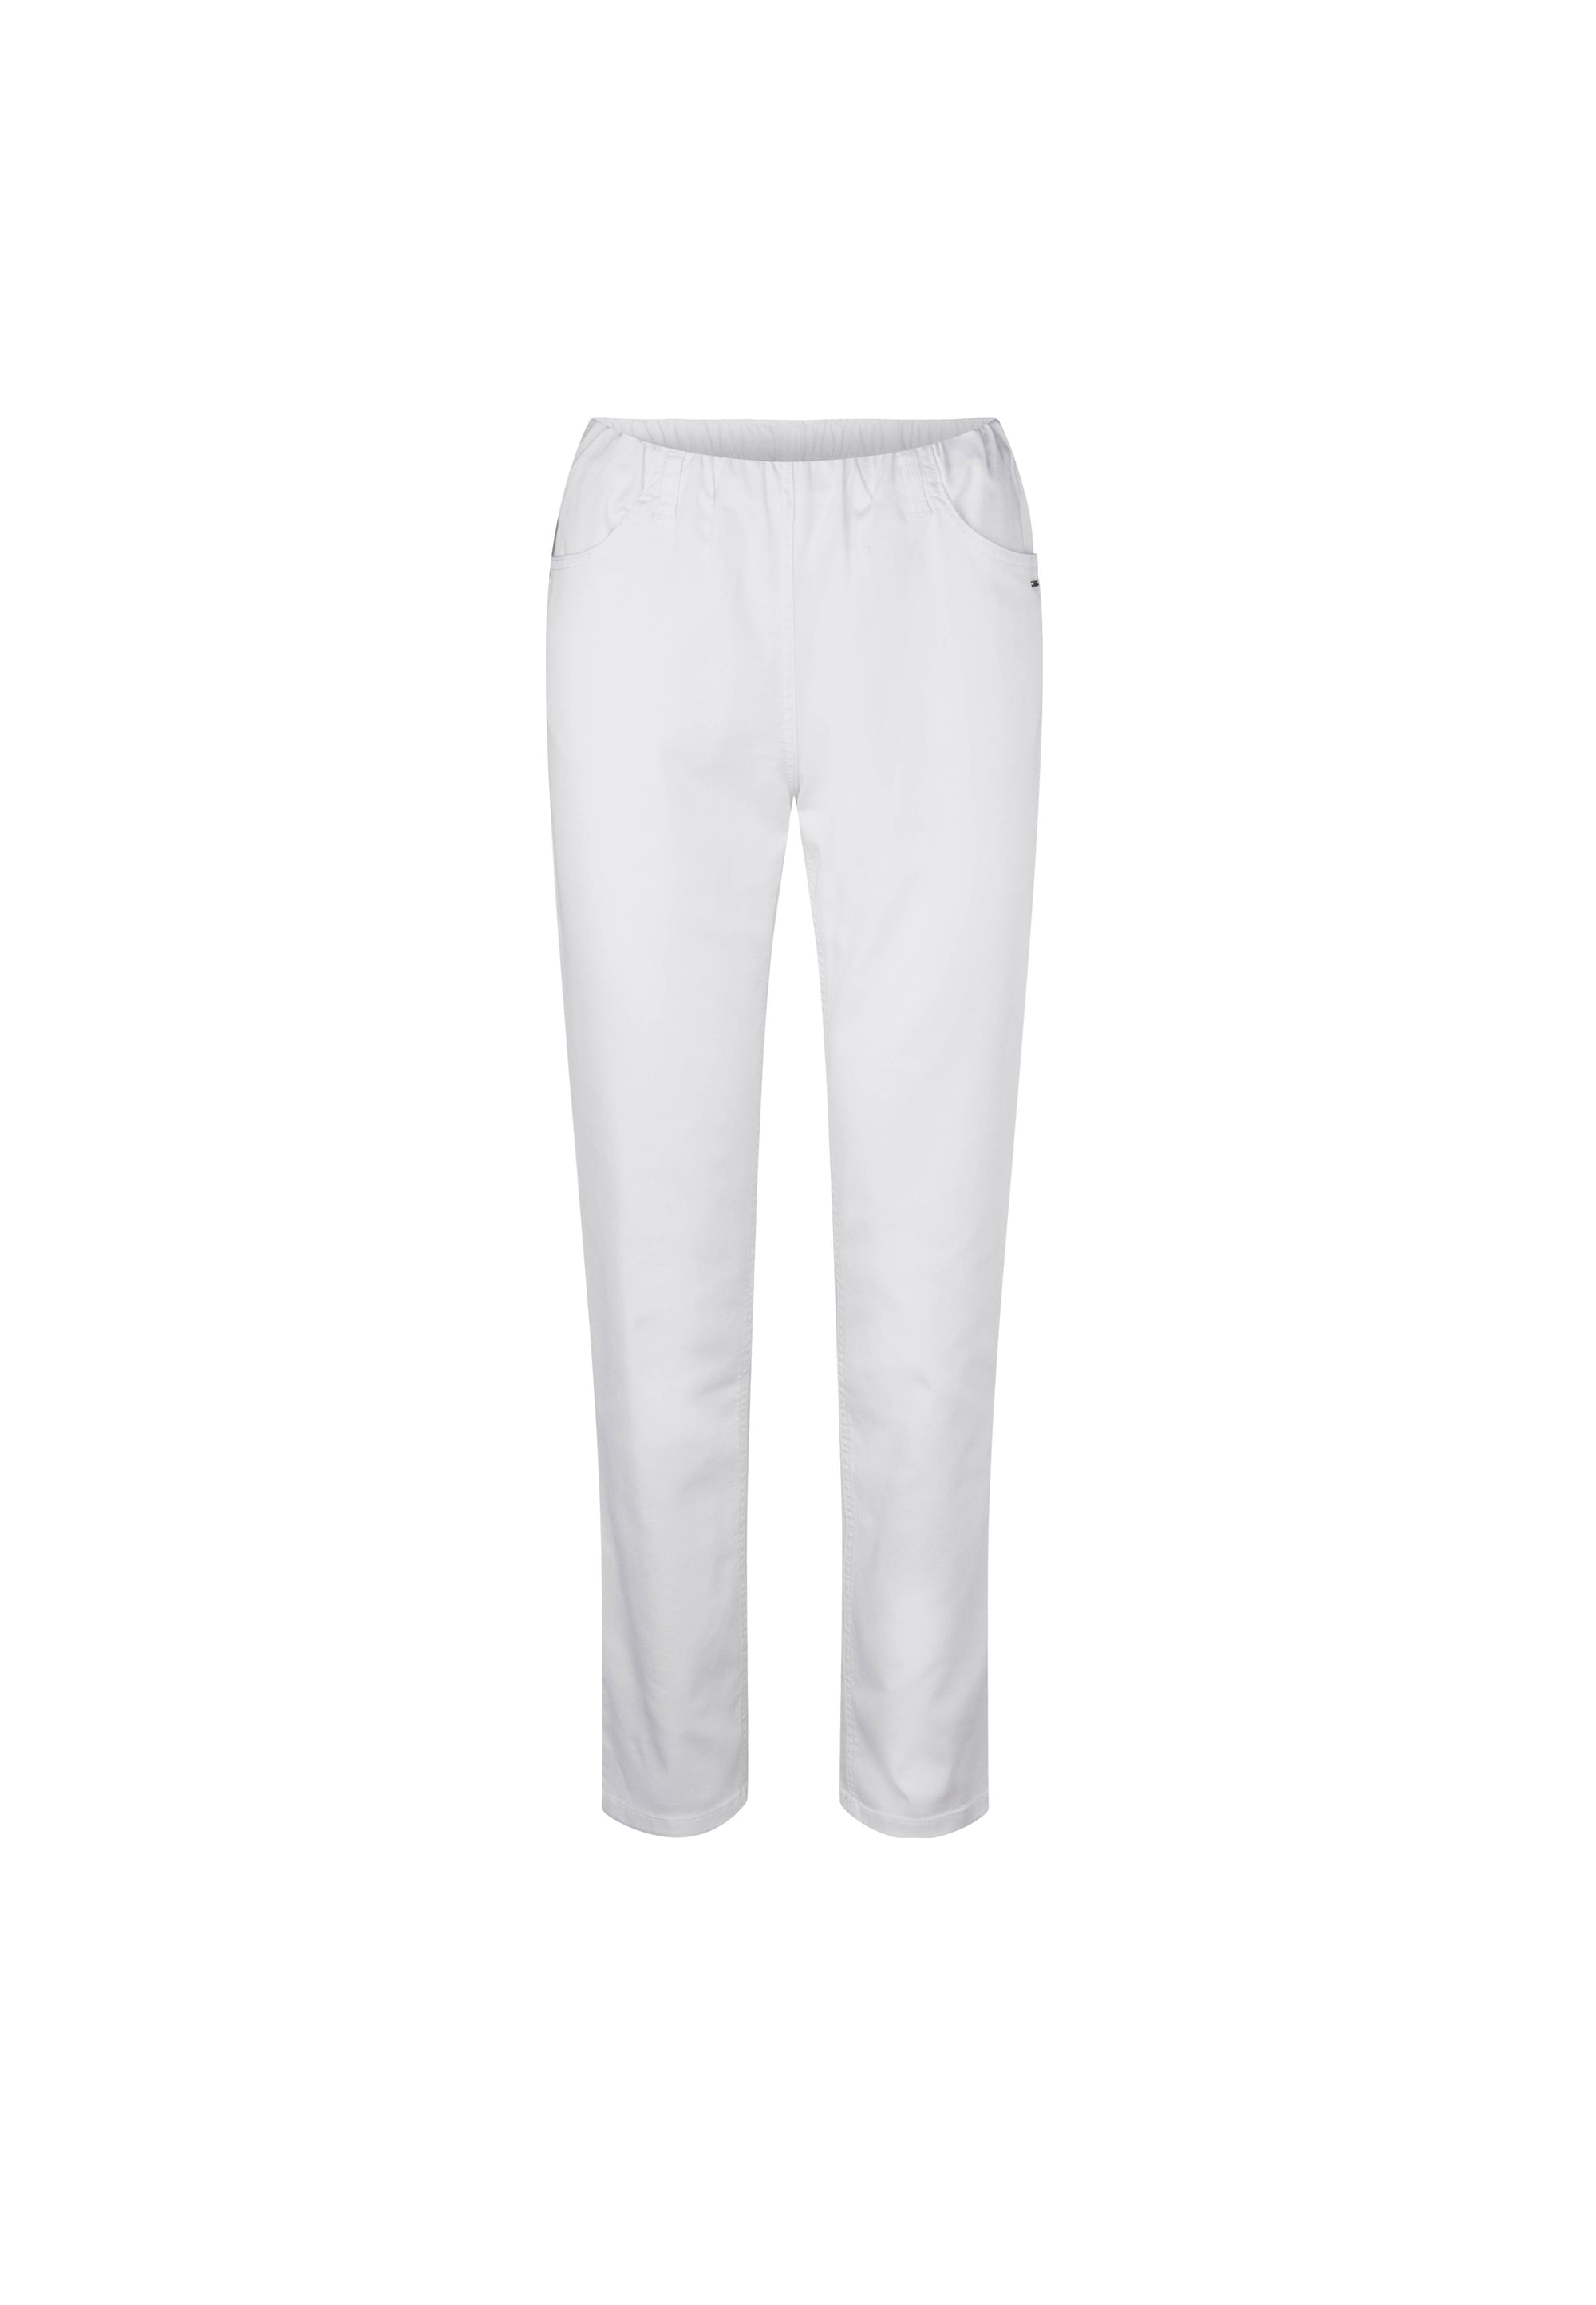 LAURIE Kelly Regular - Medium Length Trousers REGULAR 10000 White